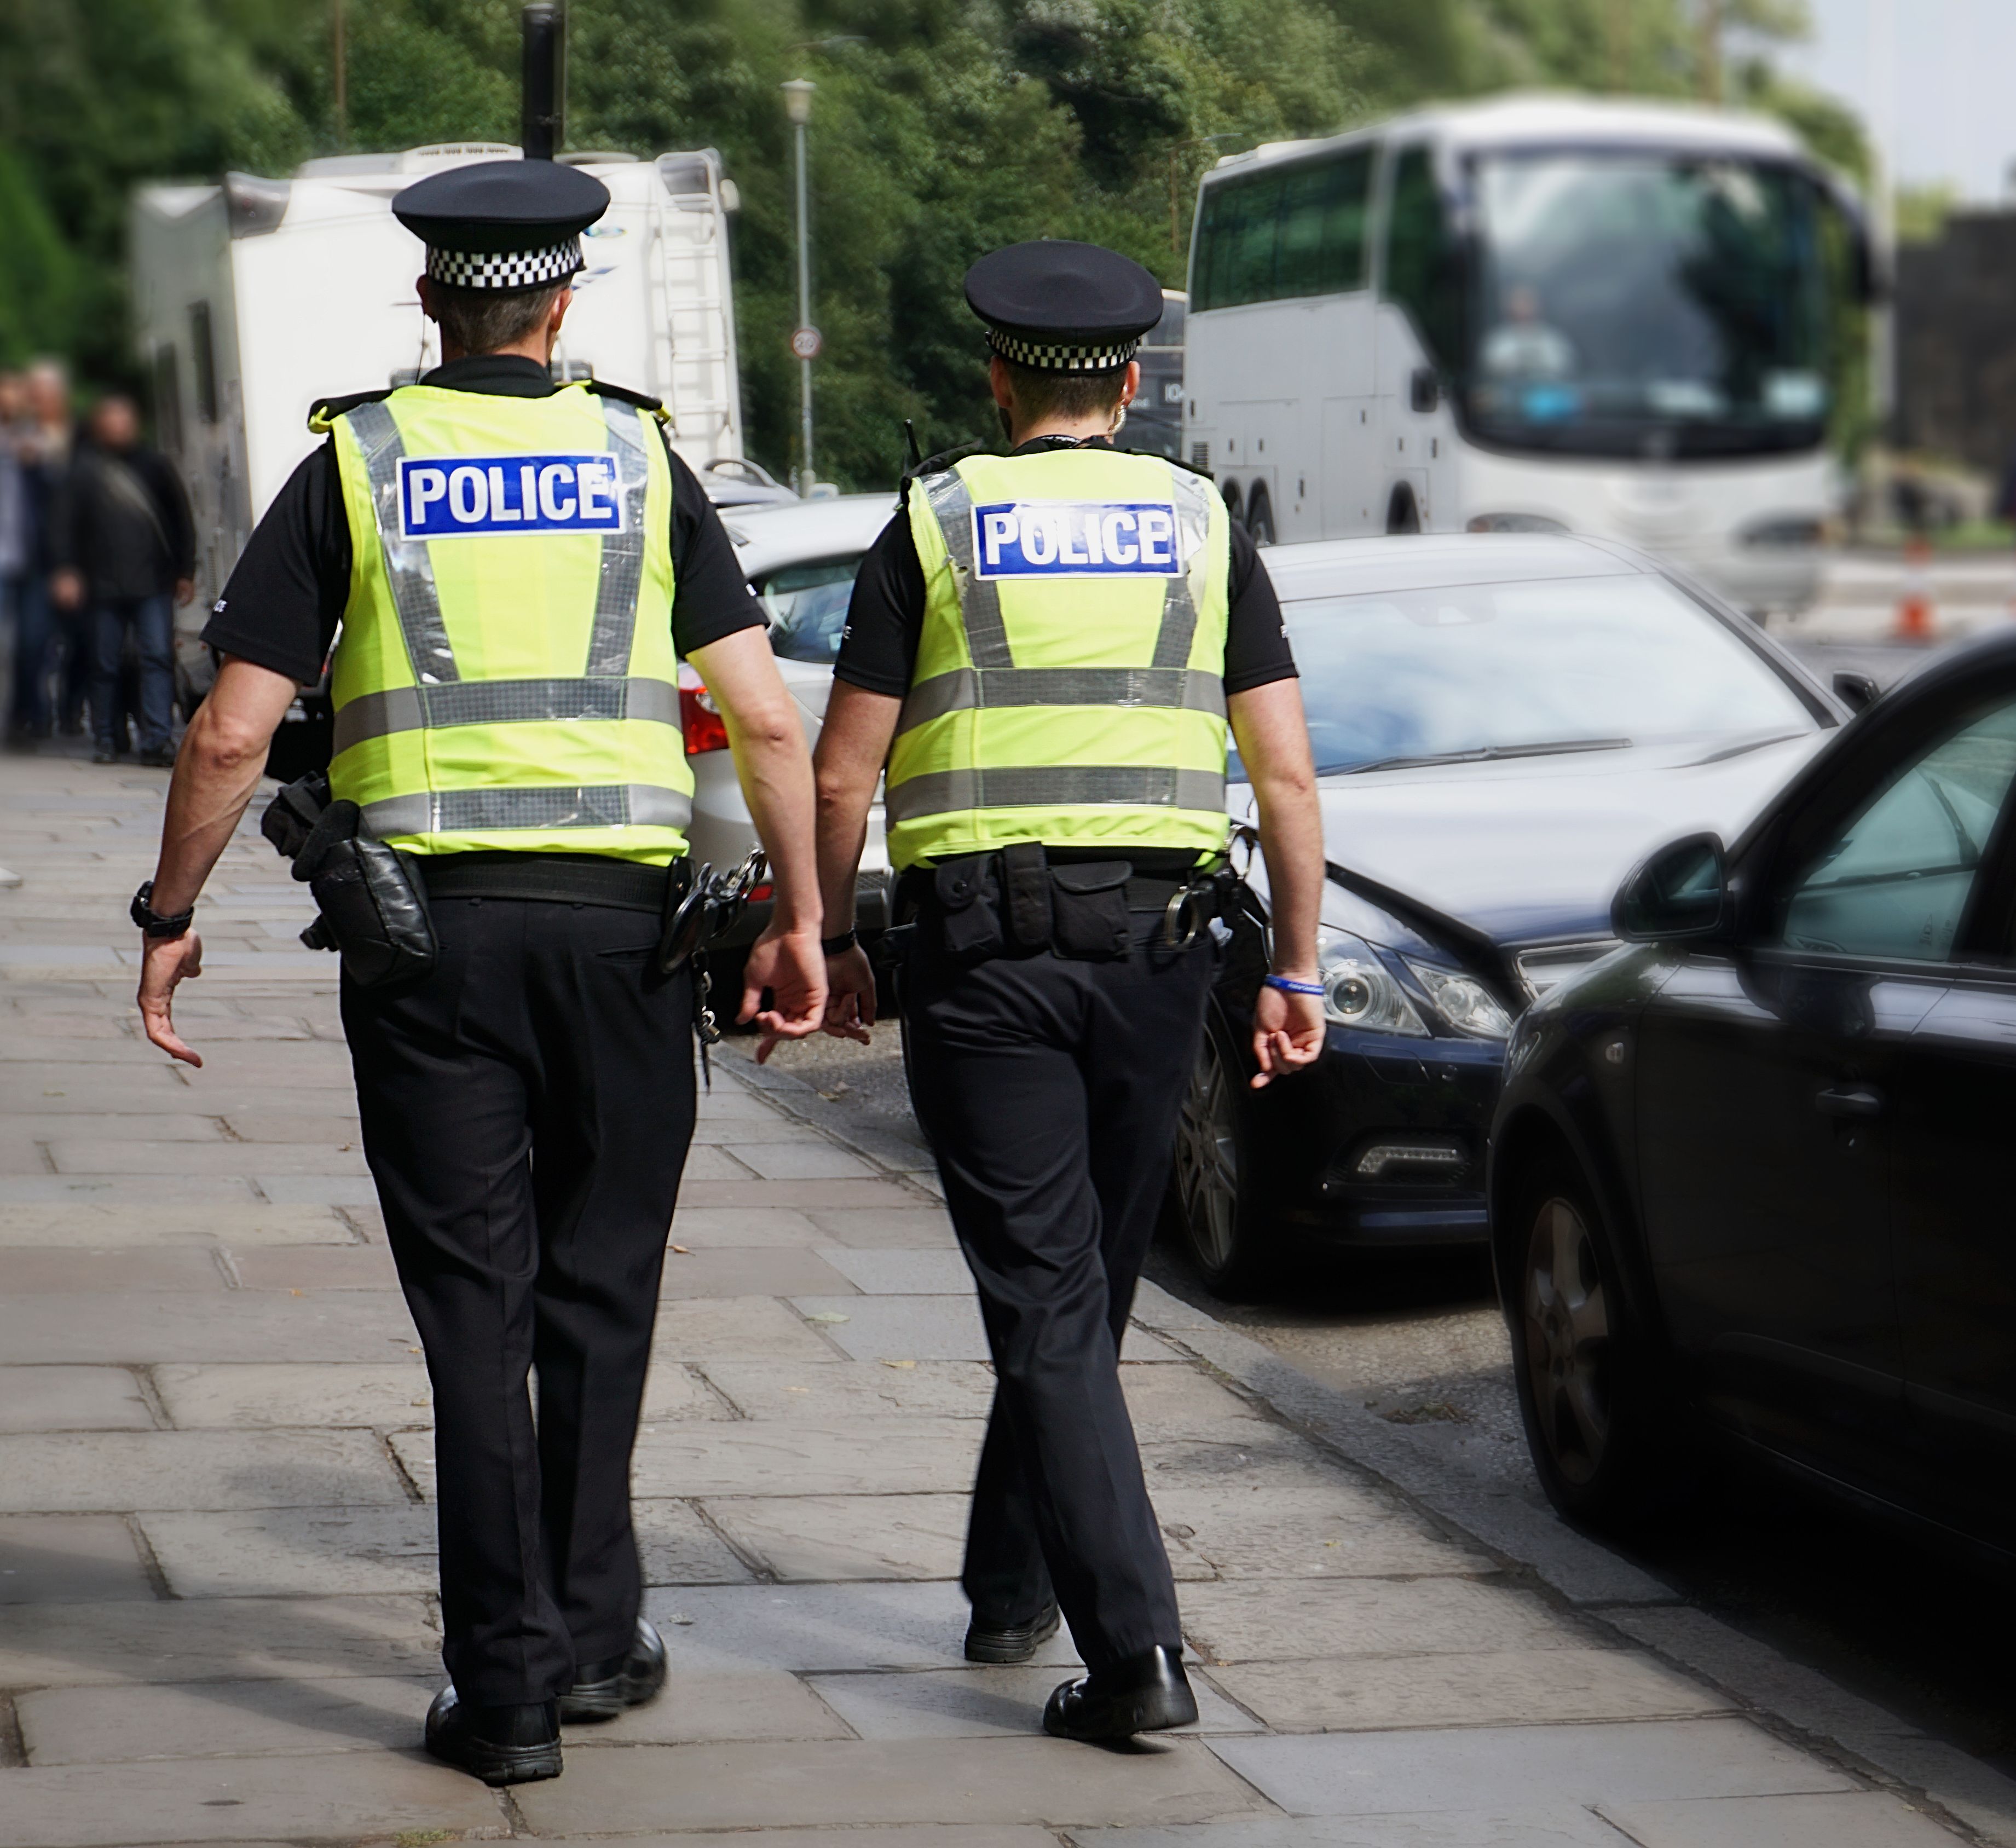 Police strolling on the sidewalk. | Source: Shutterstock 